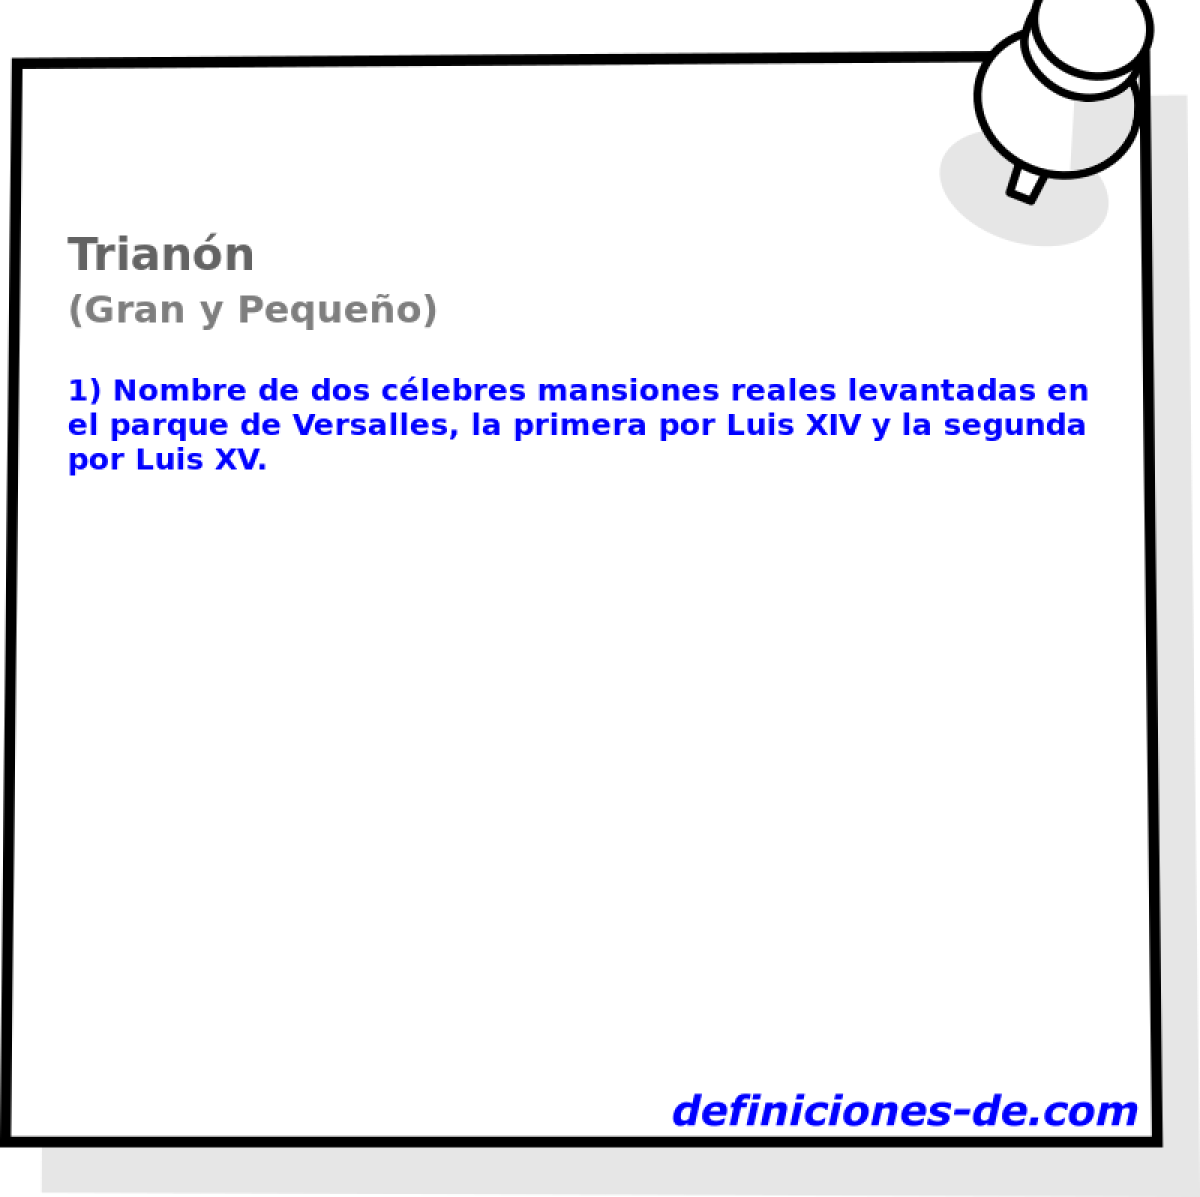 Triann (Gran y Pequeo)